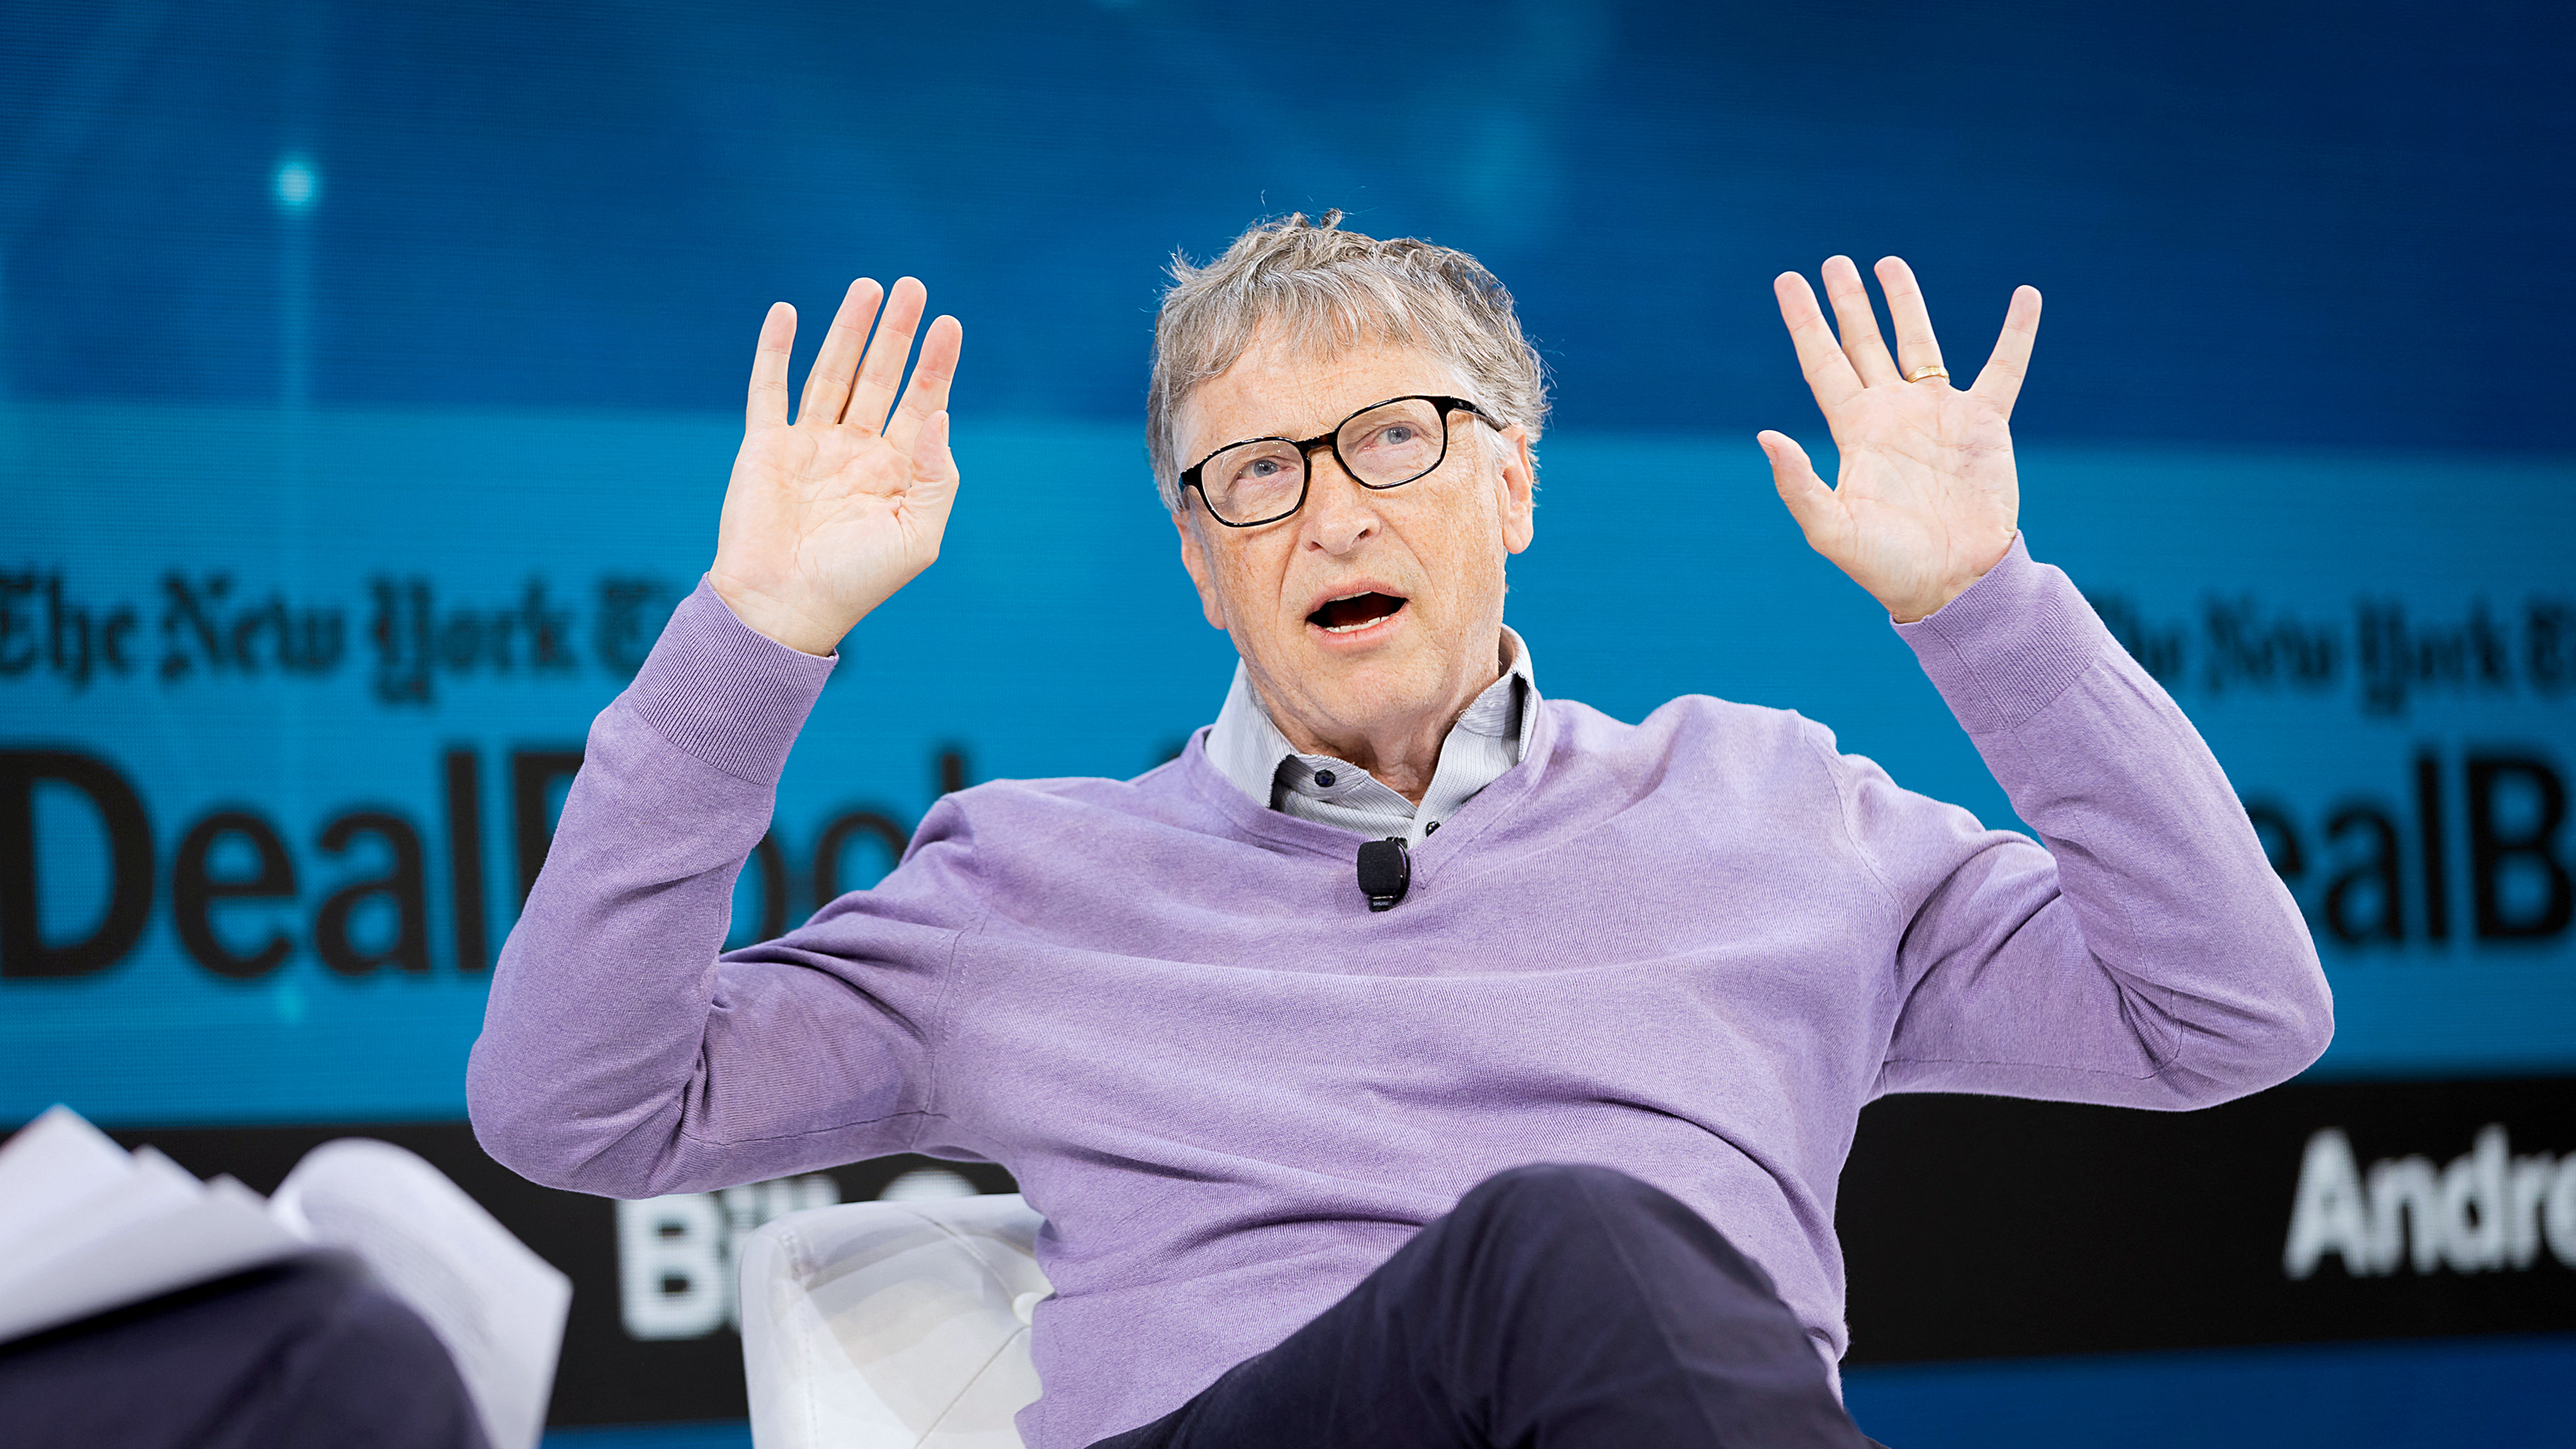 Bill Gates elismerte, hogy viszonya volt egy alkalmazottjával, amit a Microsoft ki is vizsgált